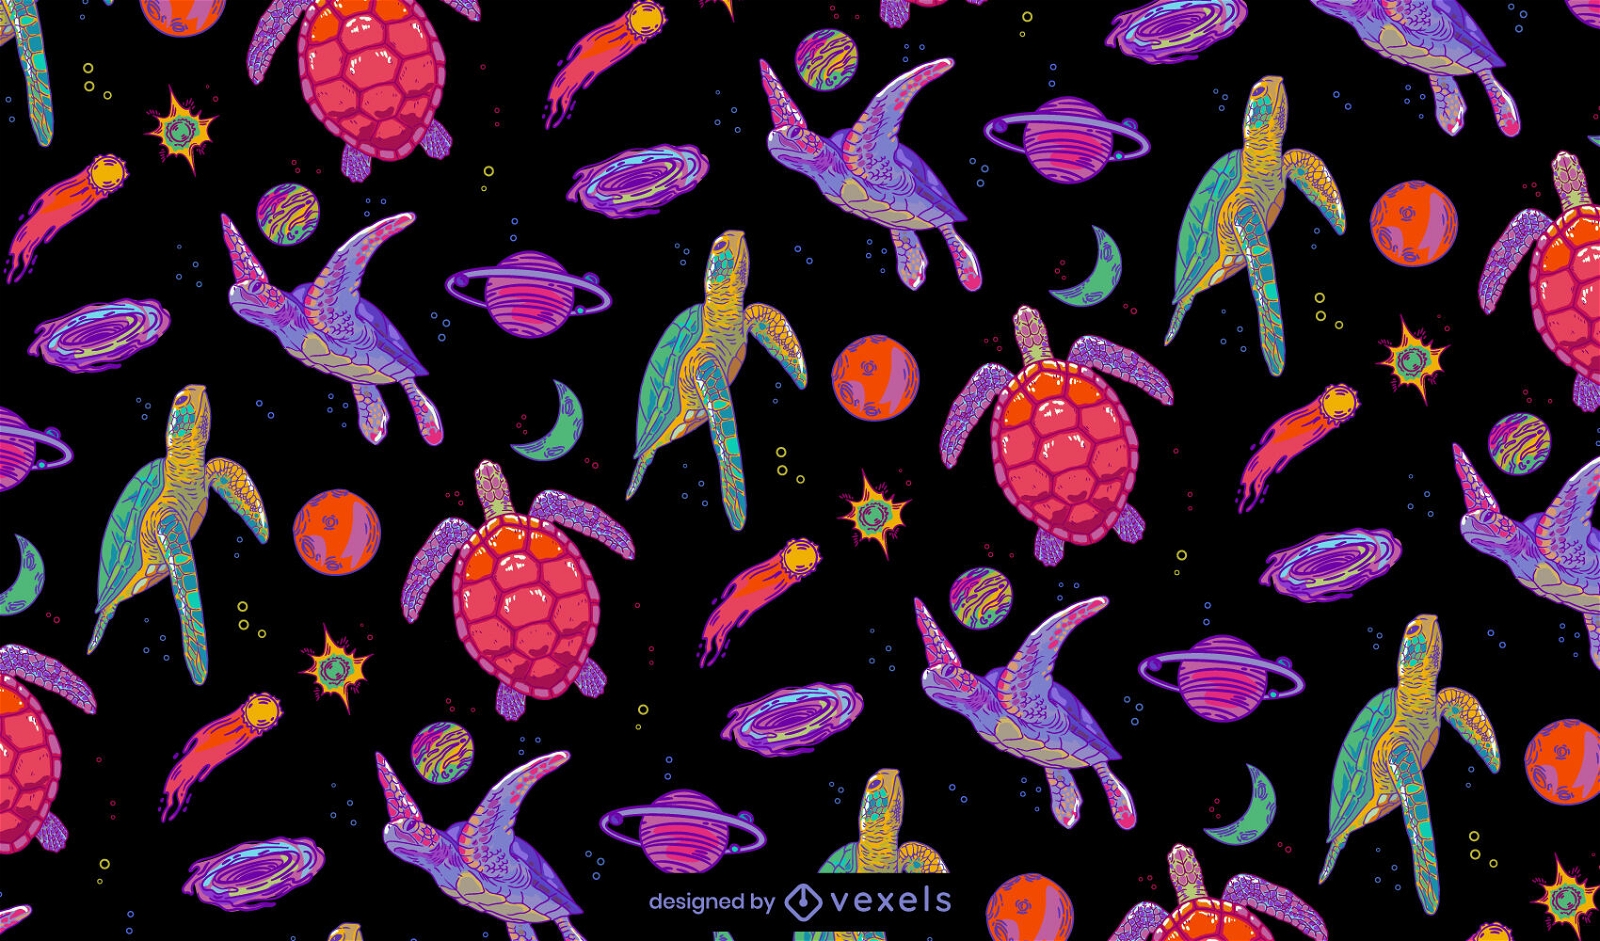 Kachelbares Musterdesign der Galaxieschildkröten